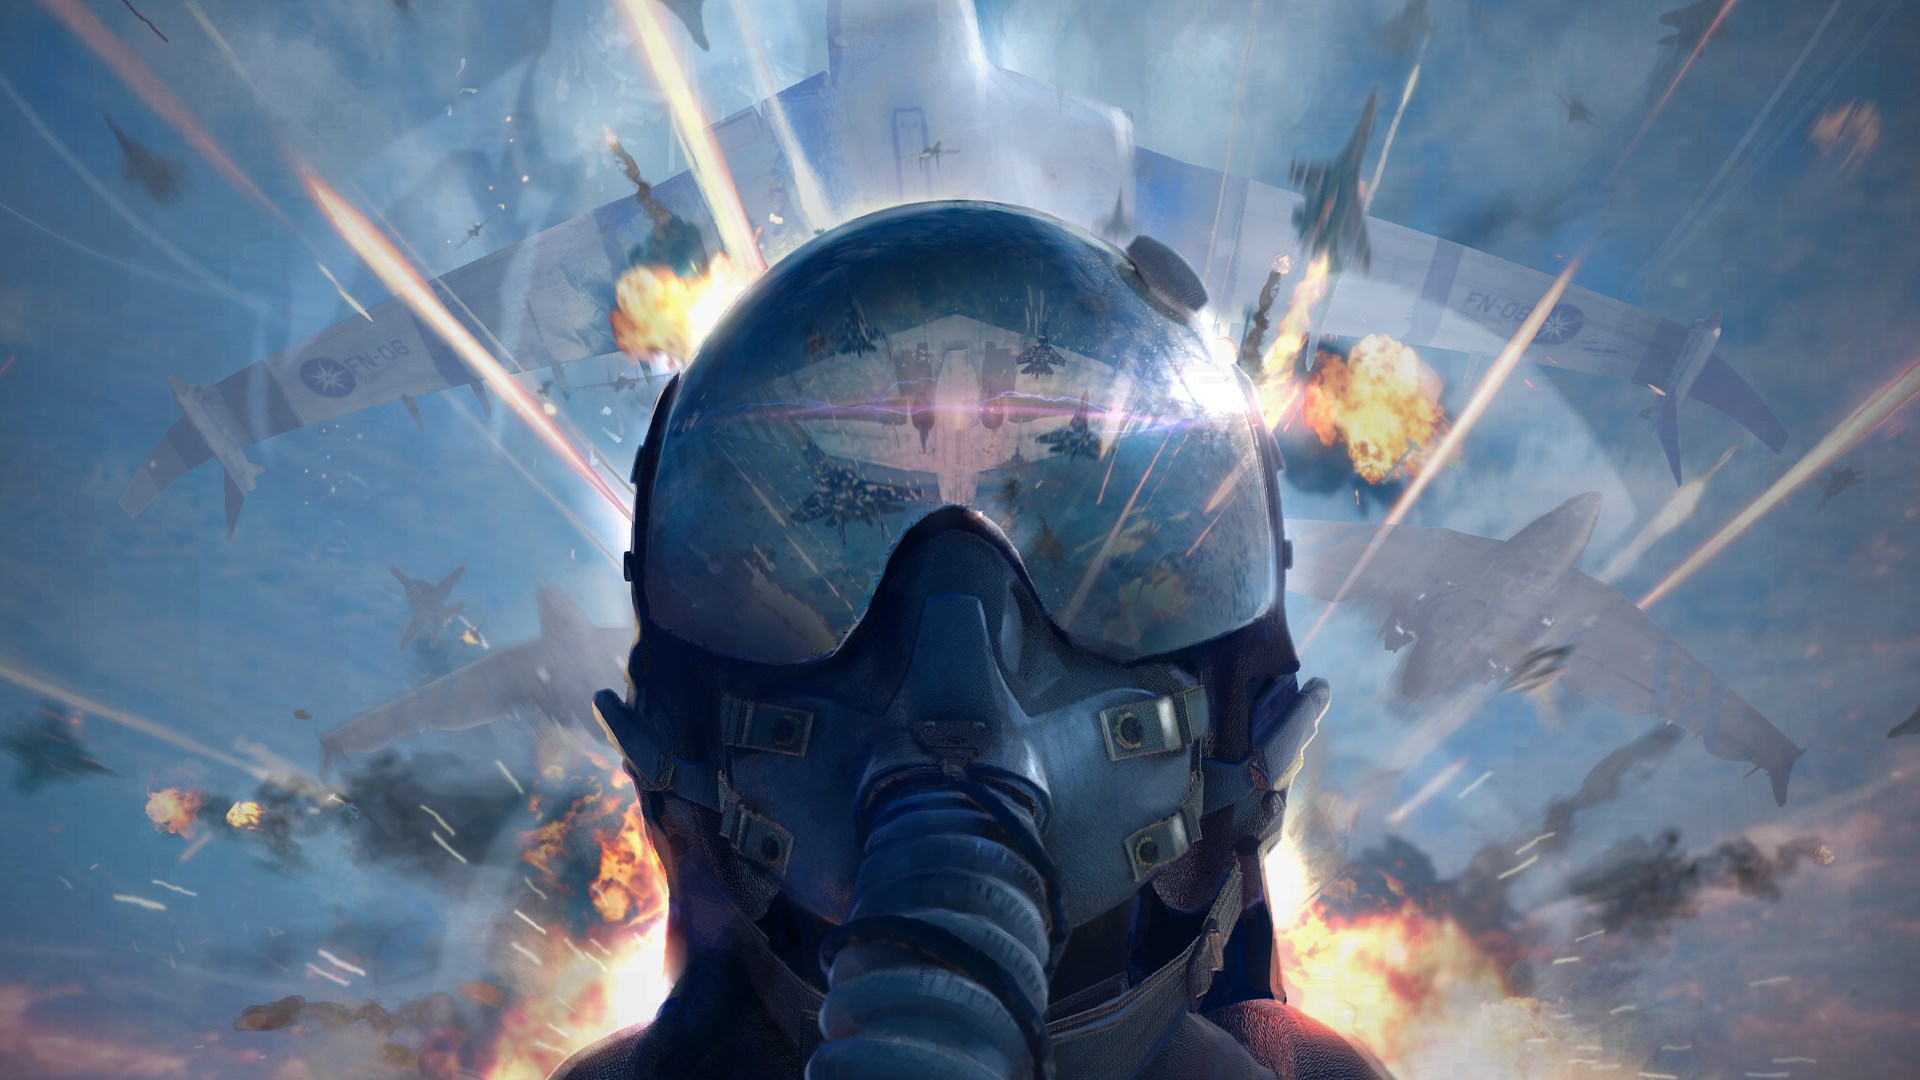 Battlefield 4: vídeo compara gráficos das versões para PC e Xbox 360